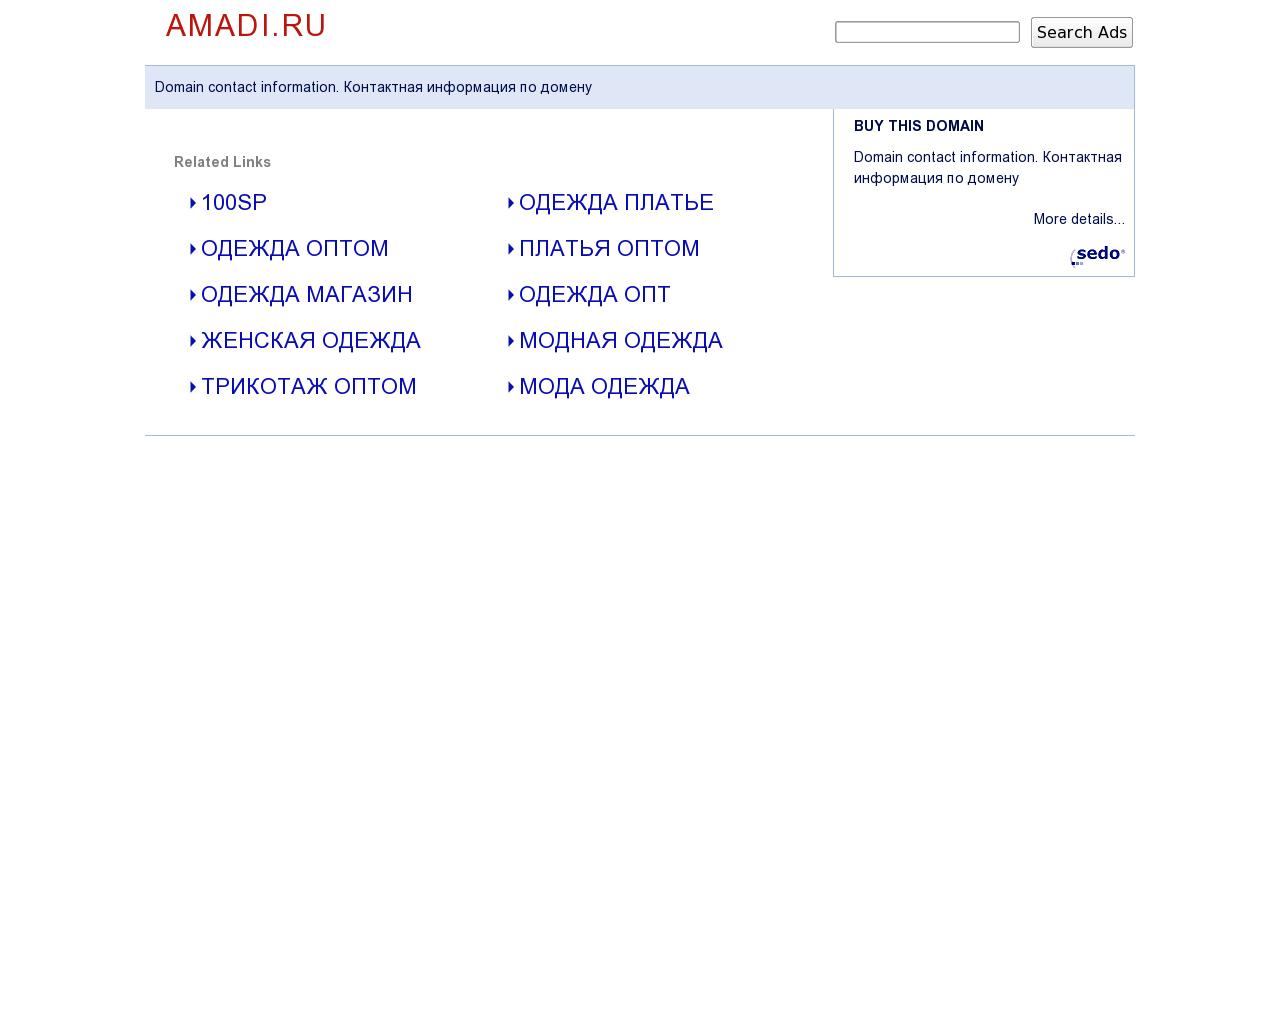 Изображение сайта amadi.ru в разрешении 1280x1024